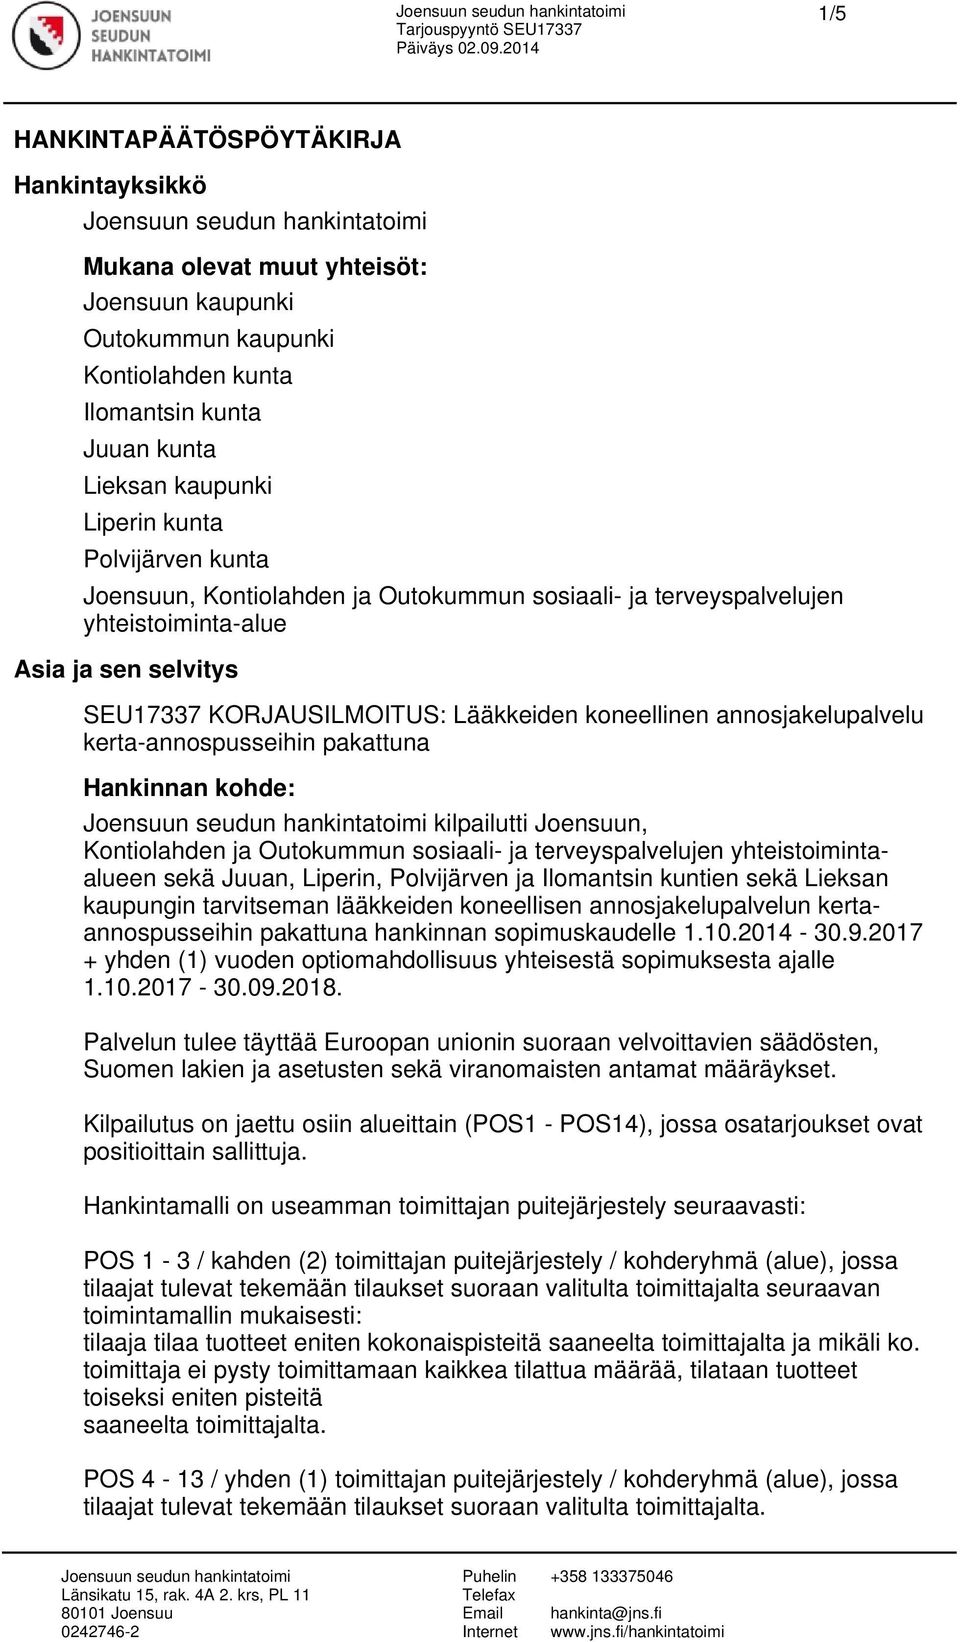 kerta-annospusseihin pakattuna Hankinnan kohde: kilpailutti Joensuun, Kontiolahden ja Outokummun sosiaali- ja terveyspalvelujen yhteistoimintaalueen sekä Juuan, Liperin, Polvijärven ja Ilomantsin